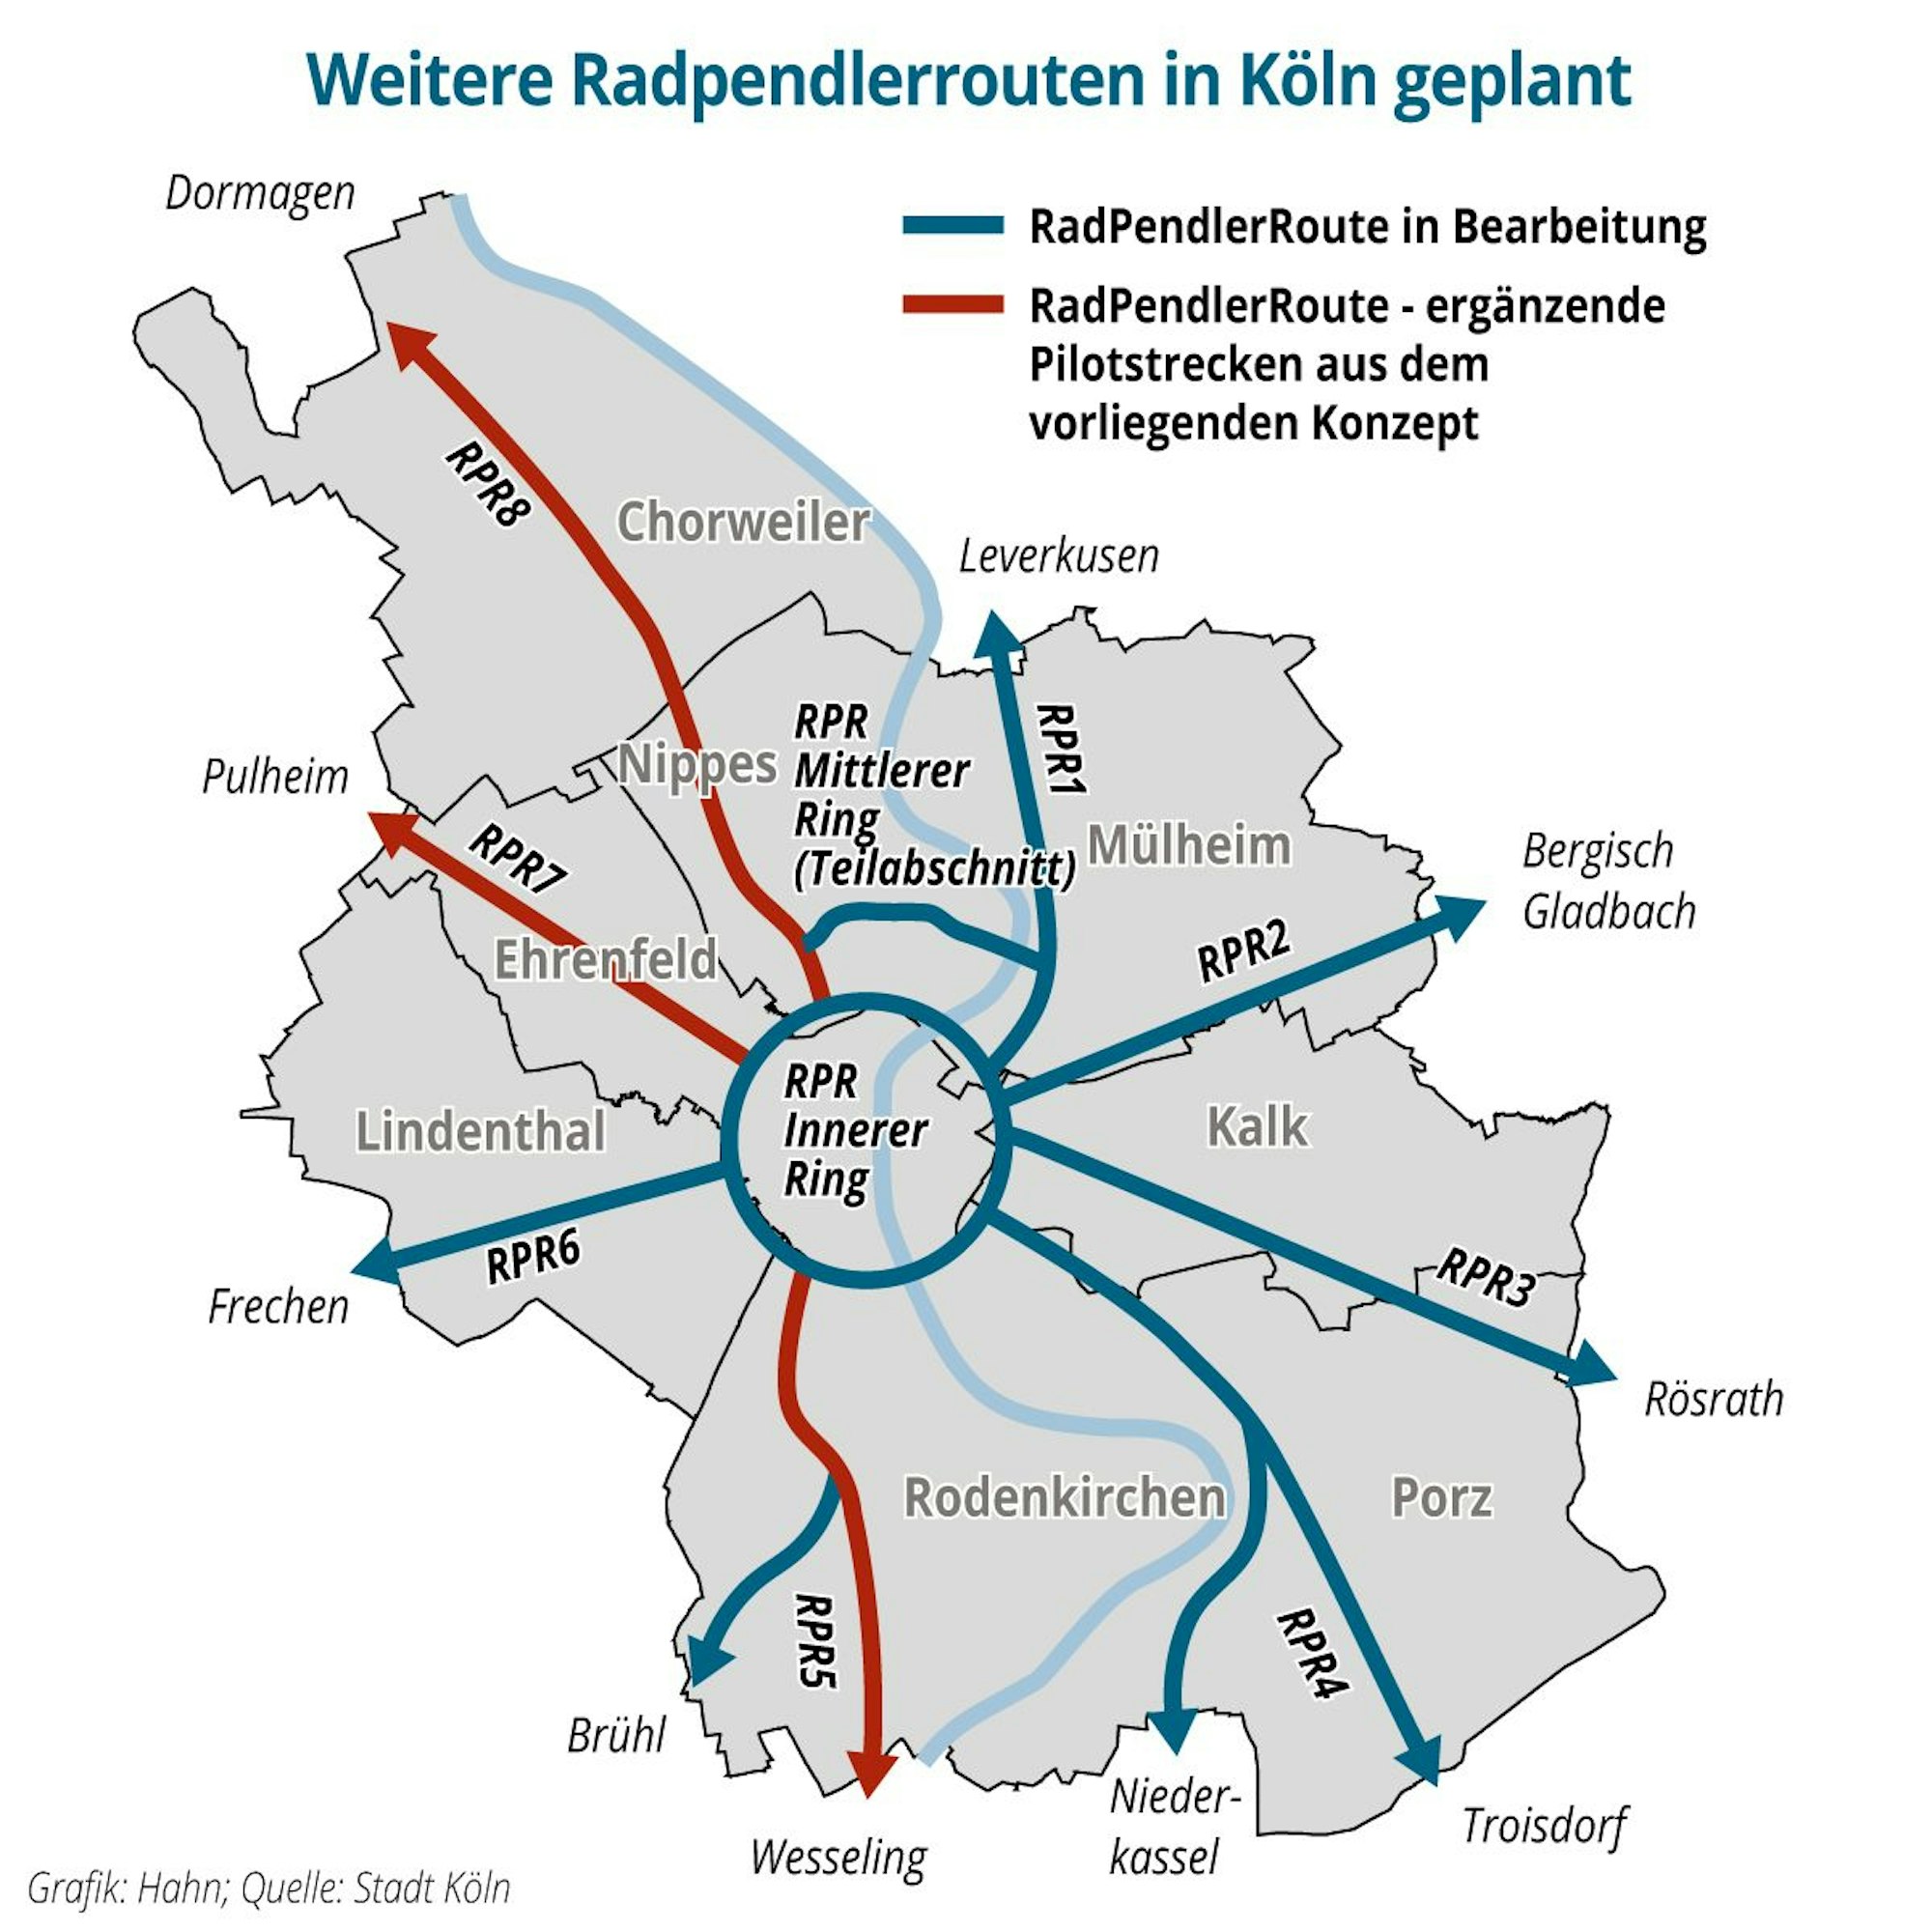 Die Grafik zeigt die geplanten Radpendelrouten in und um Köln.